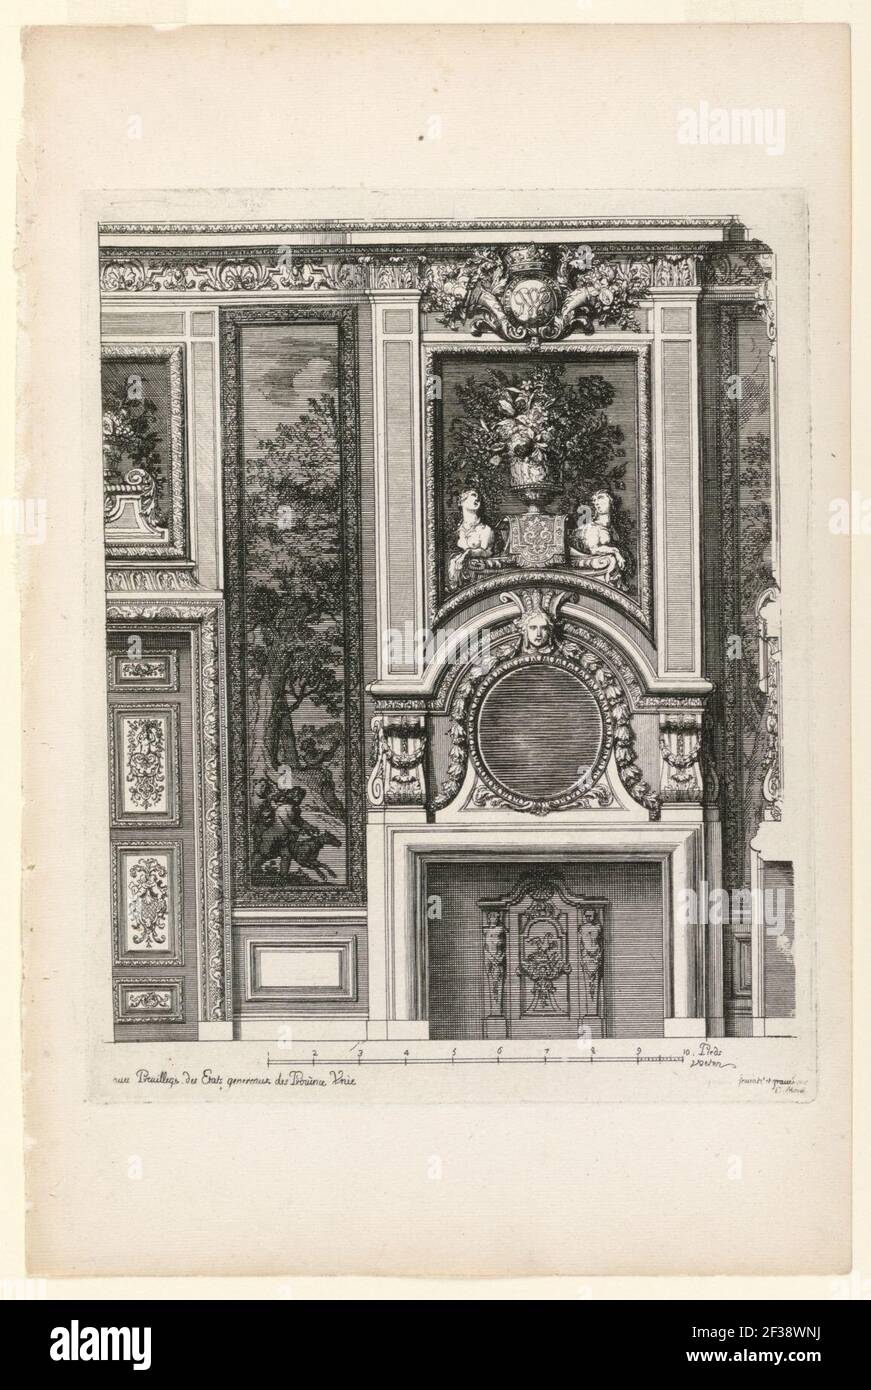 Print, Plate in Nouvelles Cheminée faittes en plusieur en droits (New Designs for Fireplaces), ca. 1700 Stock Photo